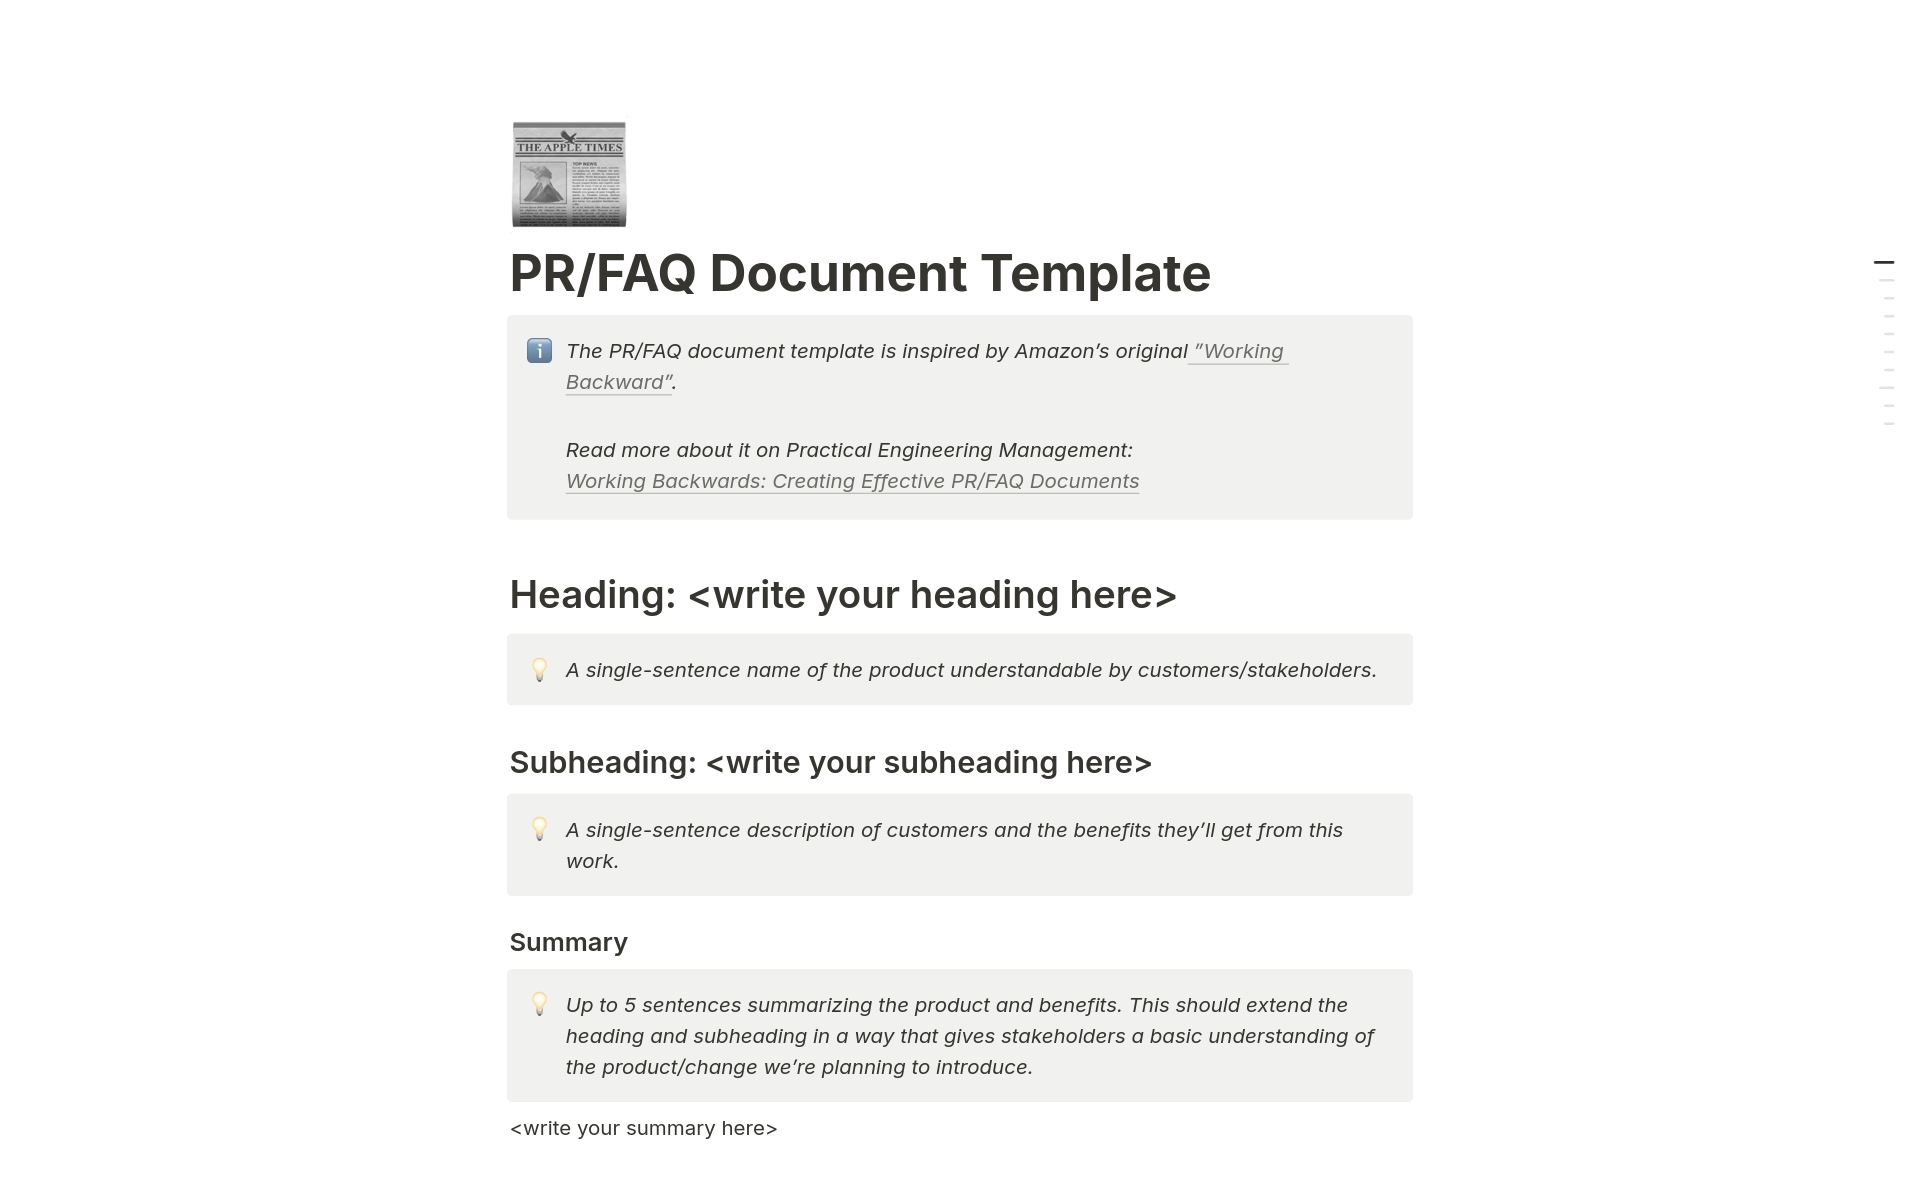 Vista previa de una plantilla para PR/FAQ Document